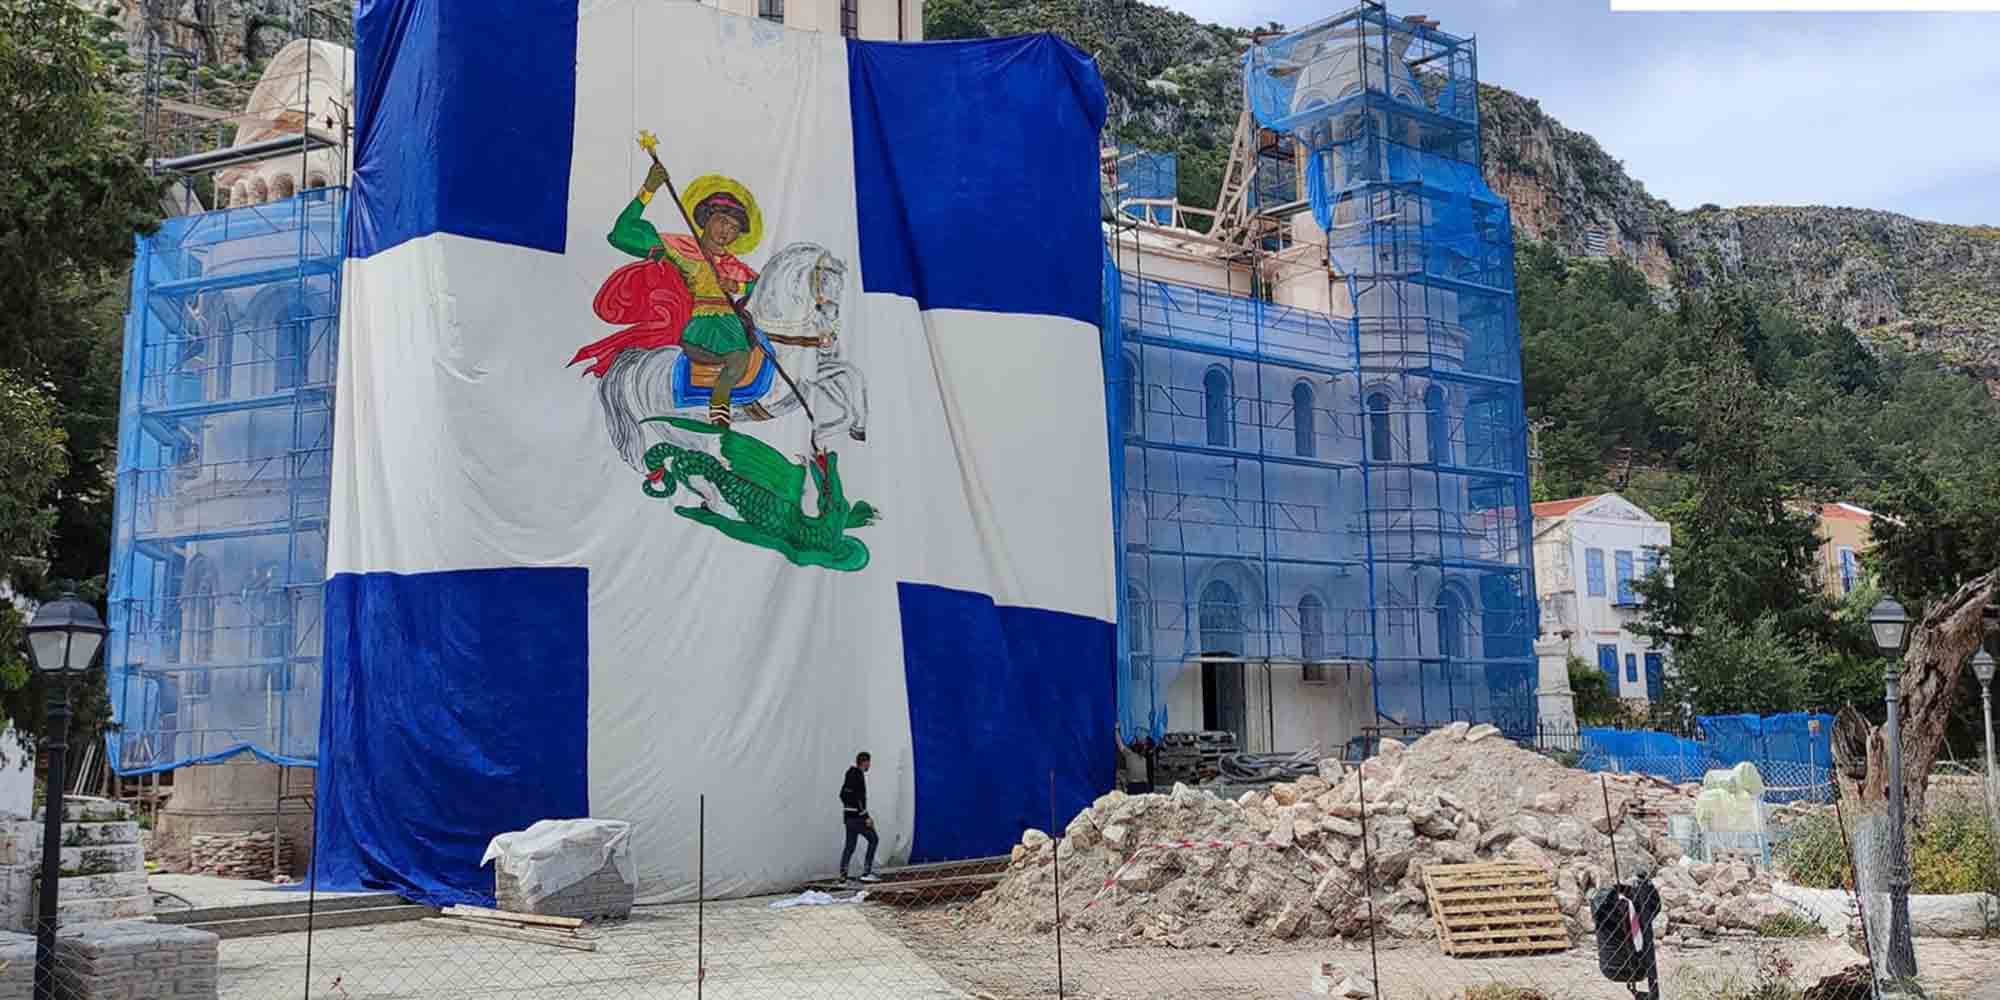 Η τεράστια σημαία του Αγίου Γεωργίου στο Καστελόριζο